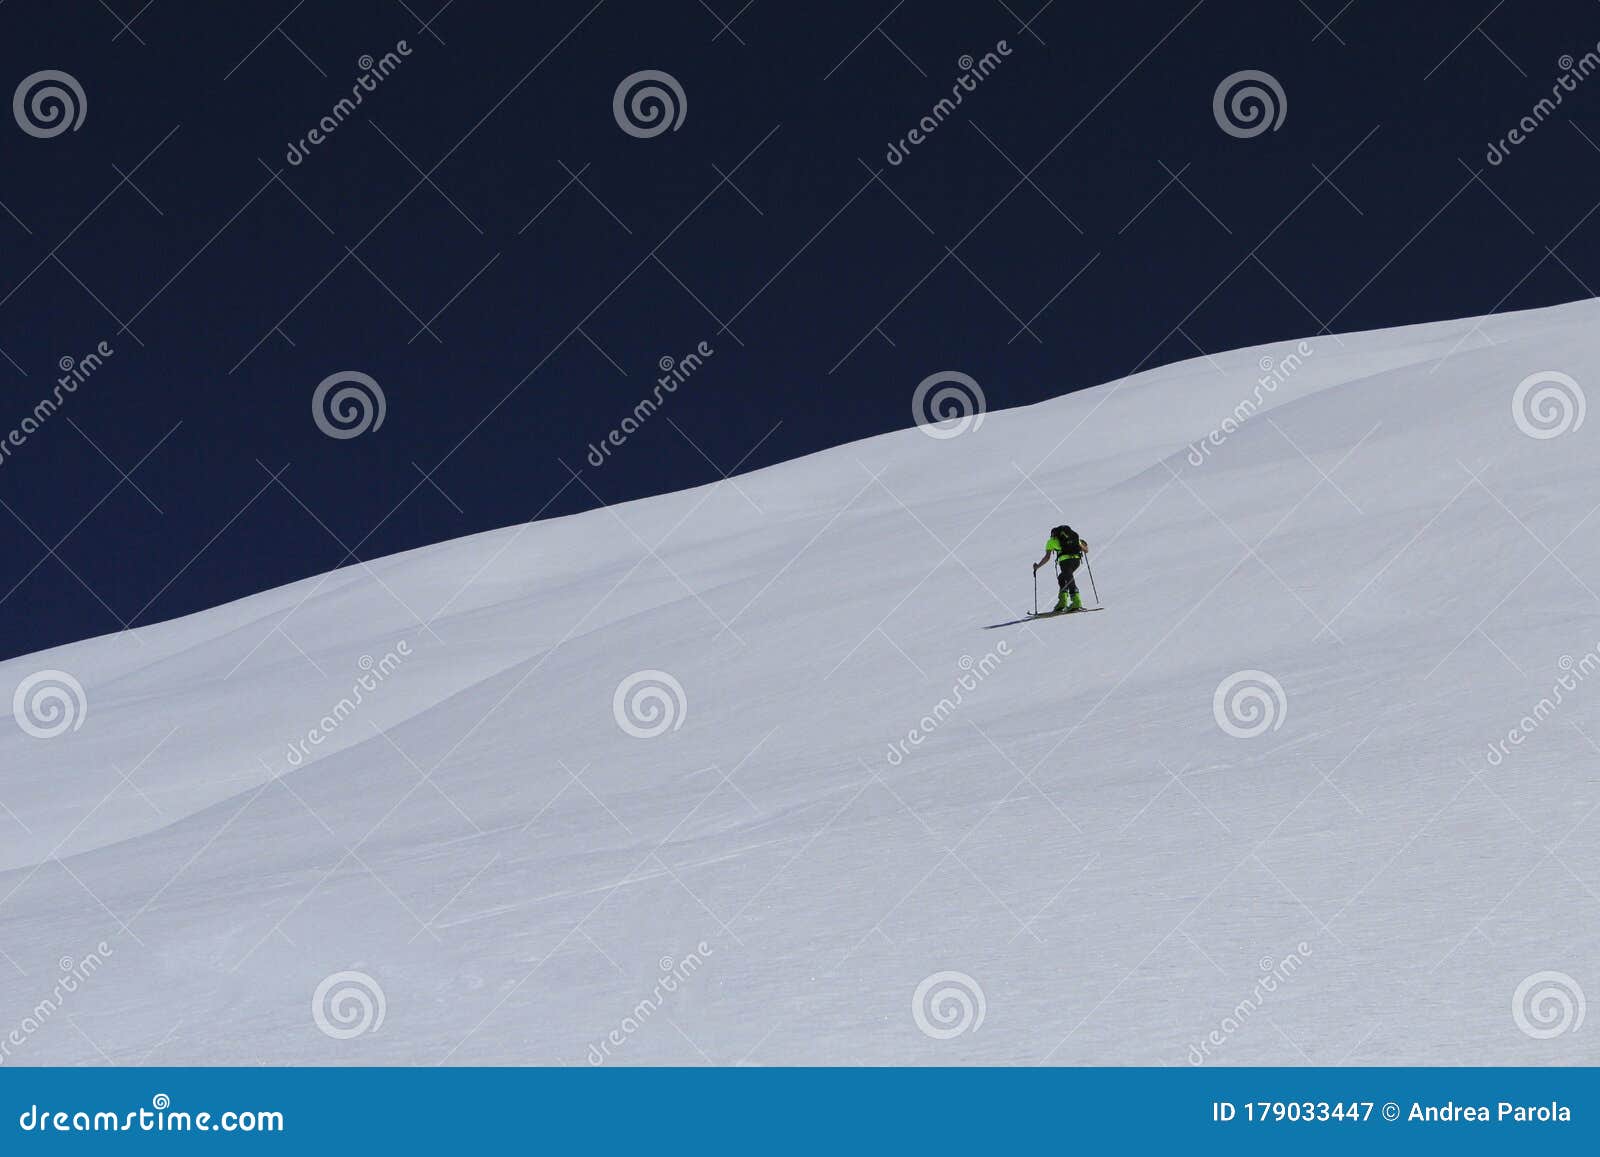 ski tour in valle maira